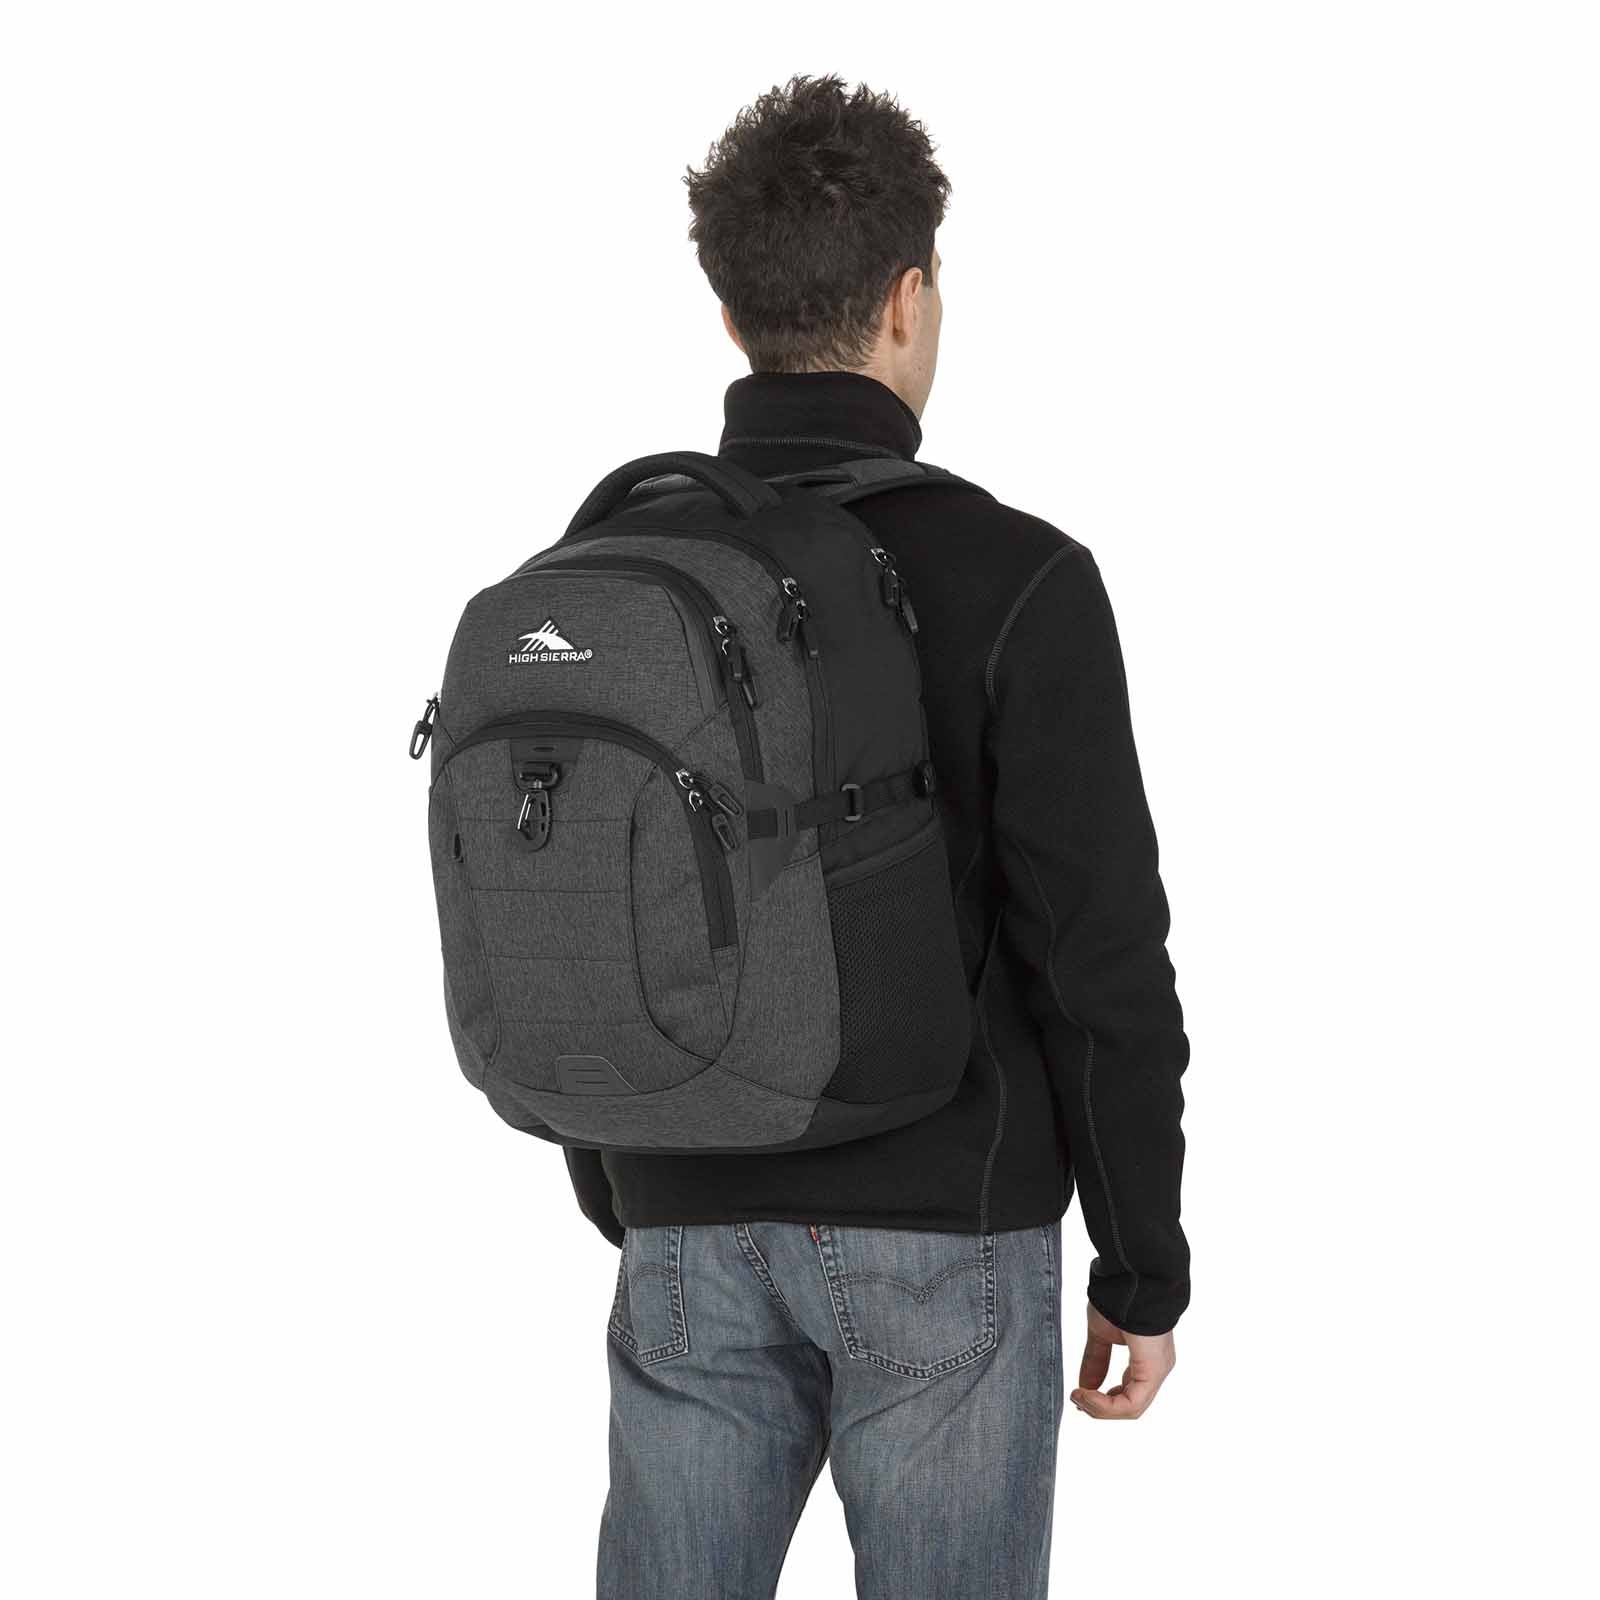    high-sierra-jarvis-15-inch-laptop-backpack-black-model